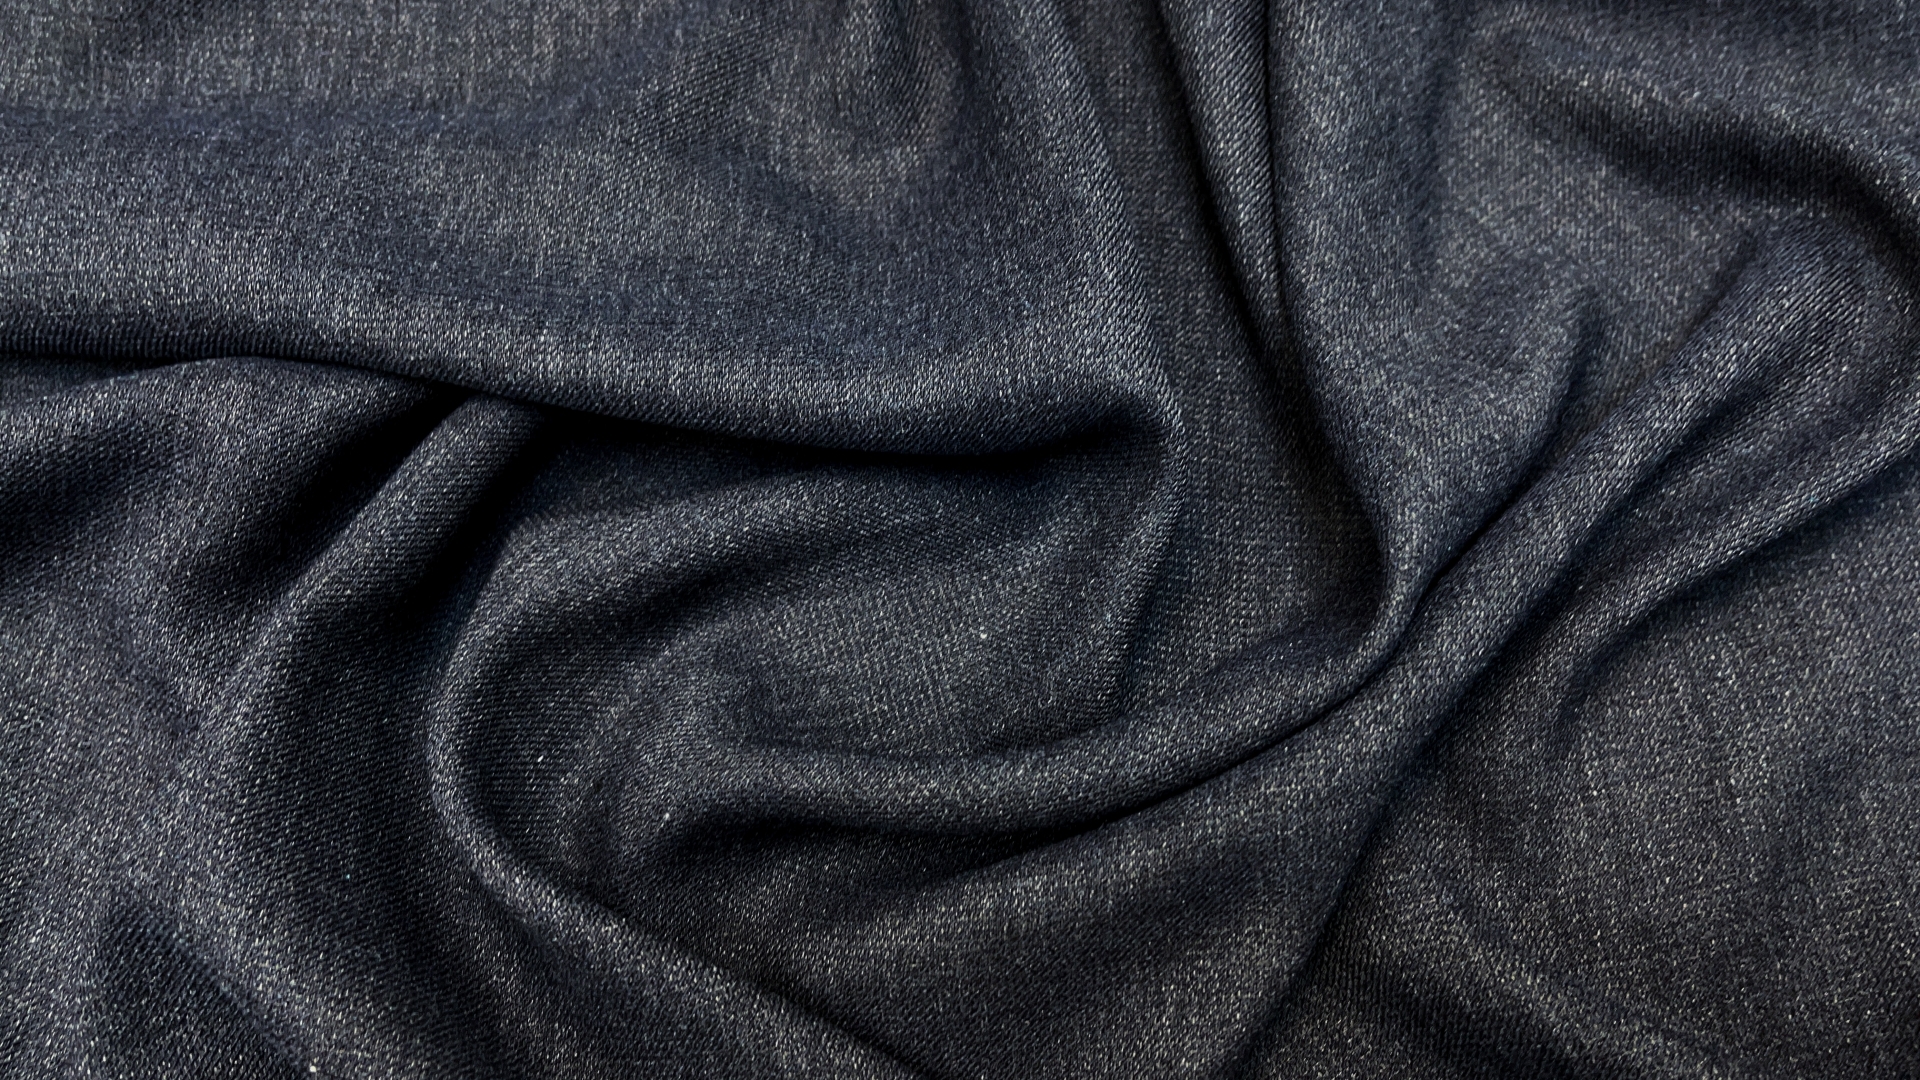 Очень ласковое, мягчайшее вискозное полотно креповой выработки из фабричного стока. Для блузона или рубашки мягкого кроя идеально. Полотно очень хорошо драпируется, можно заправлять в юбку или брюки, не опасаясь излишнего объема в области талии.